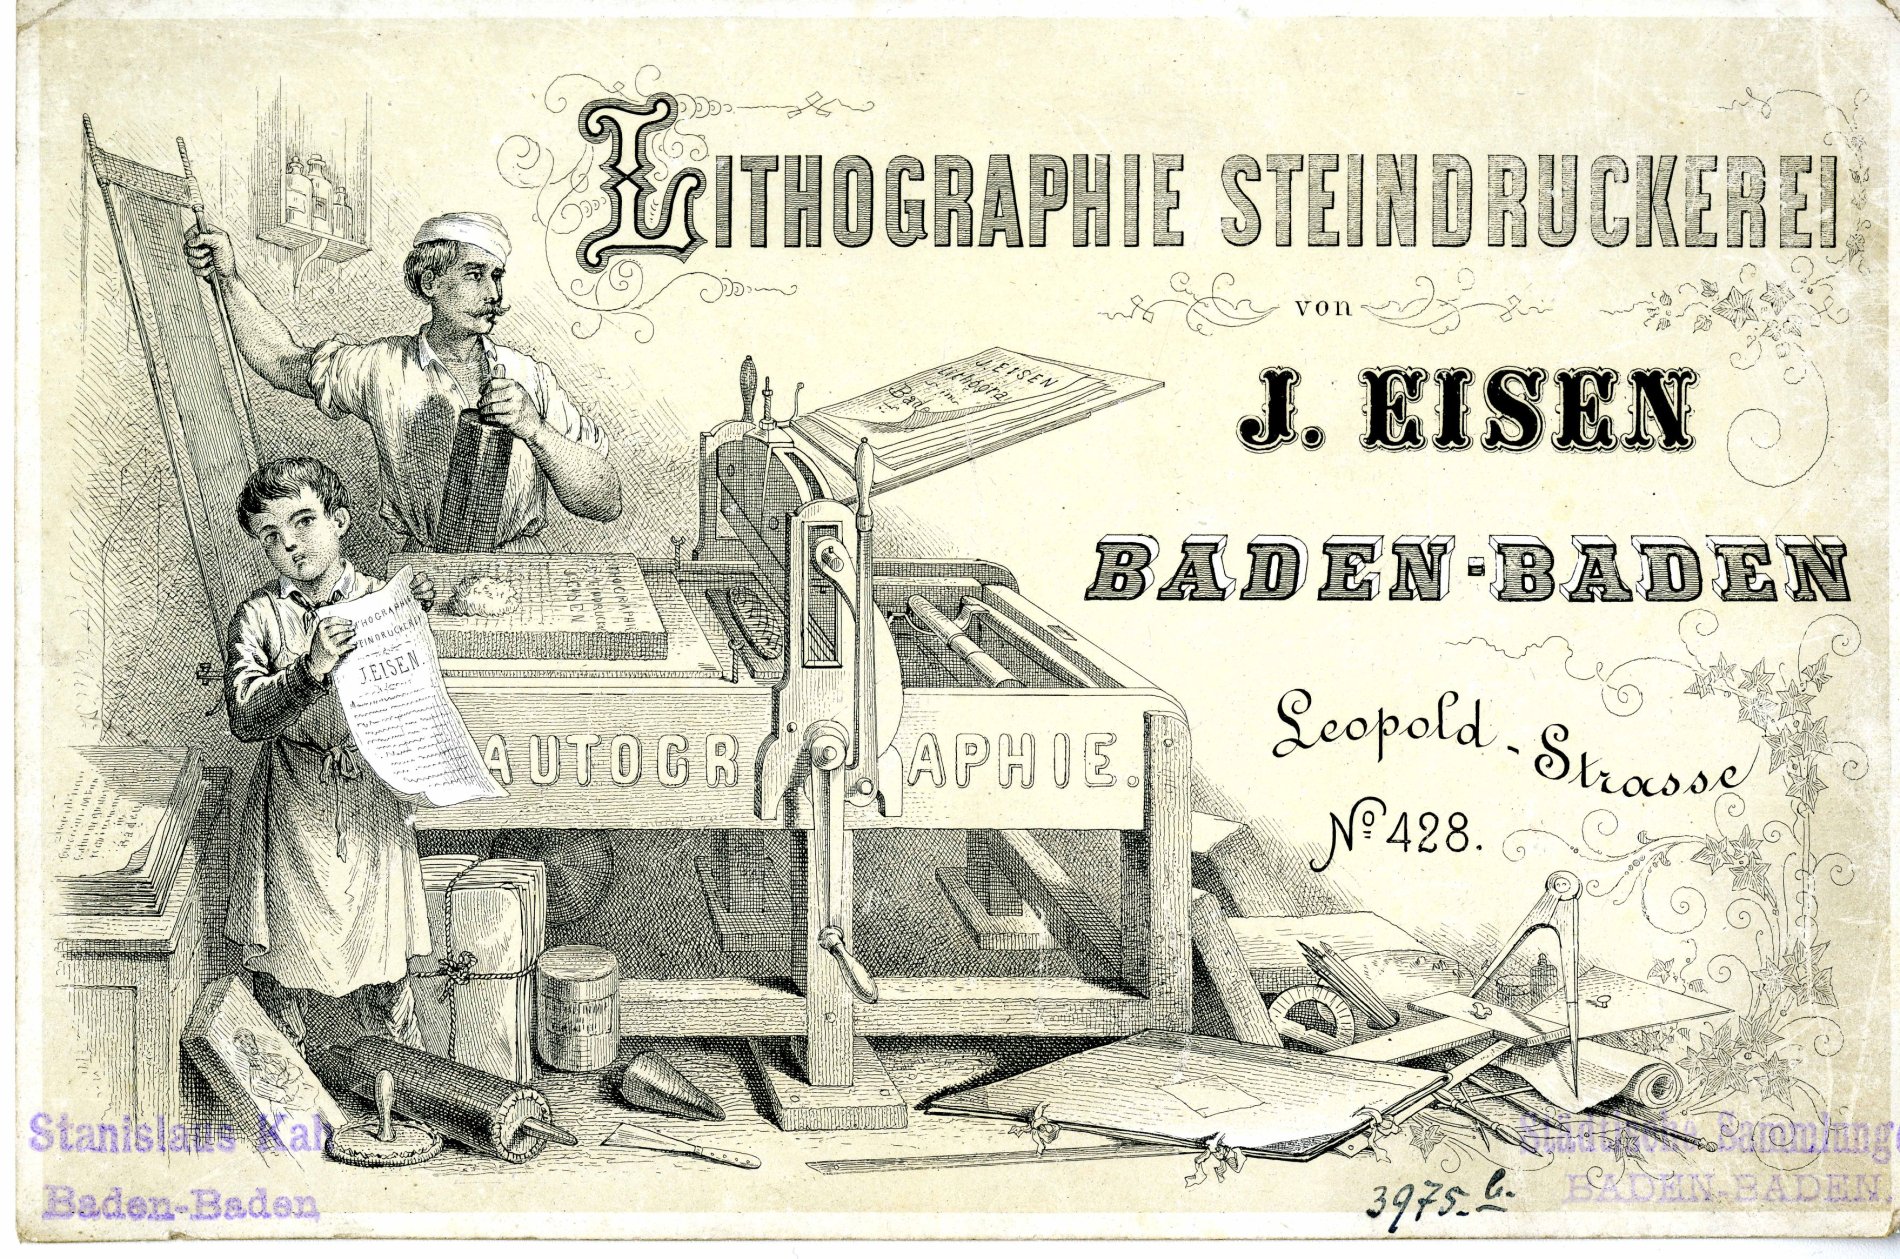 Adresskarte der Steindruckerei J. Eisen in Baden-Baden, 1865